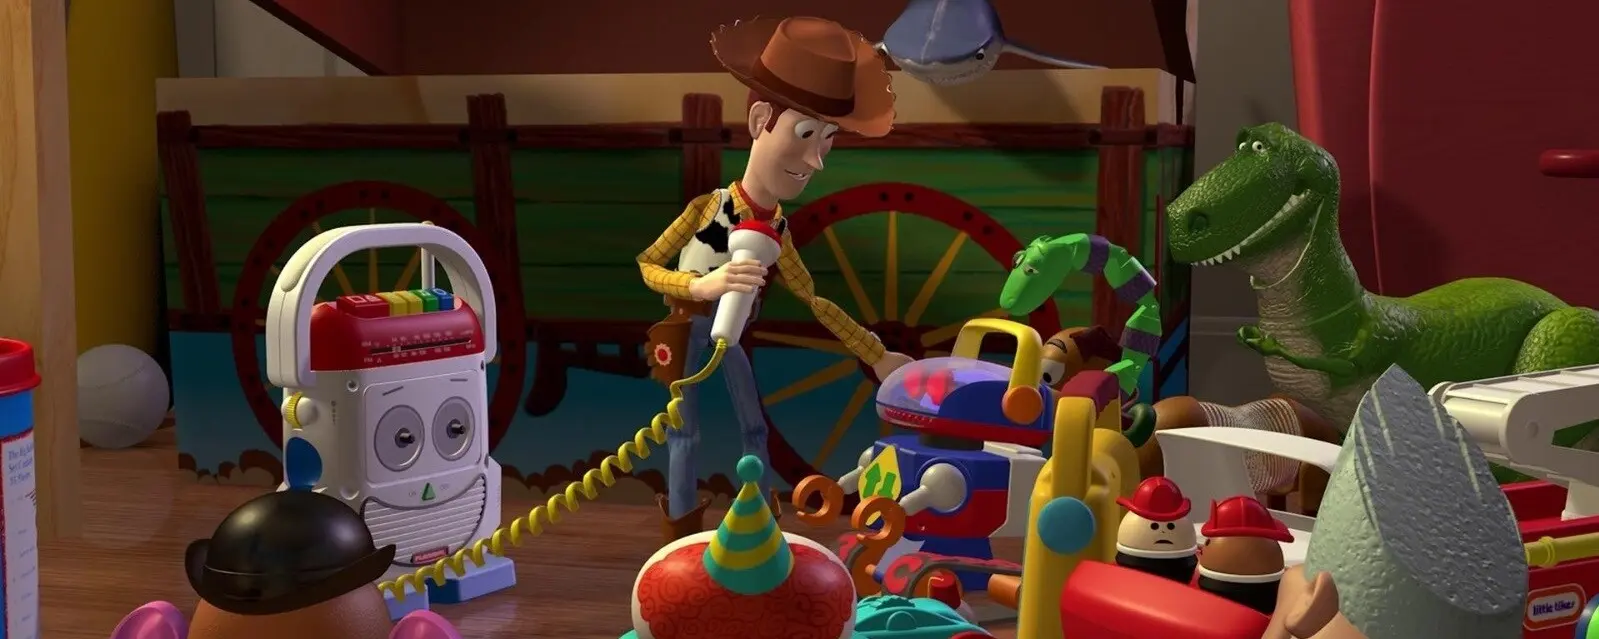 woody tren - Cómo se llama el vaquero viejo de Toy Story